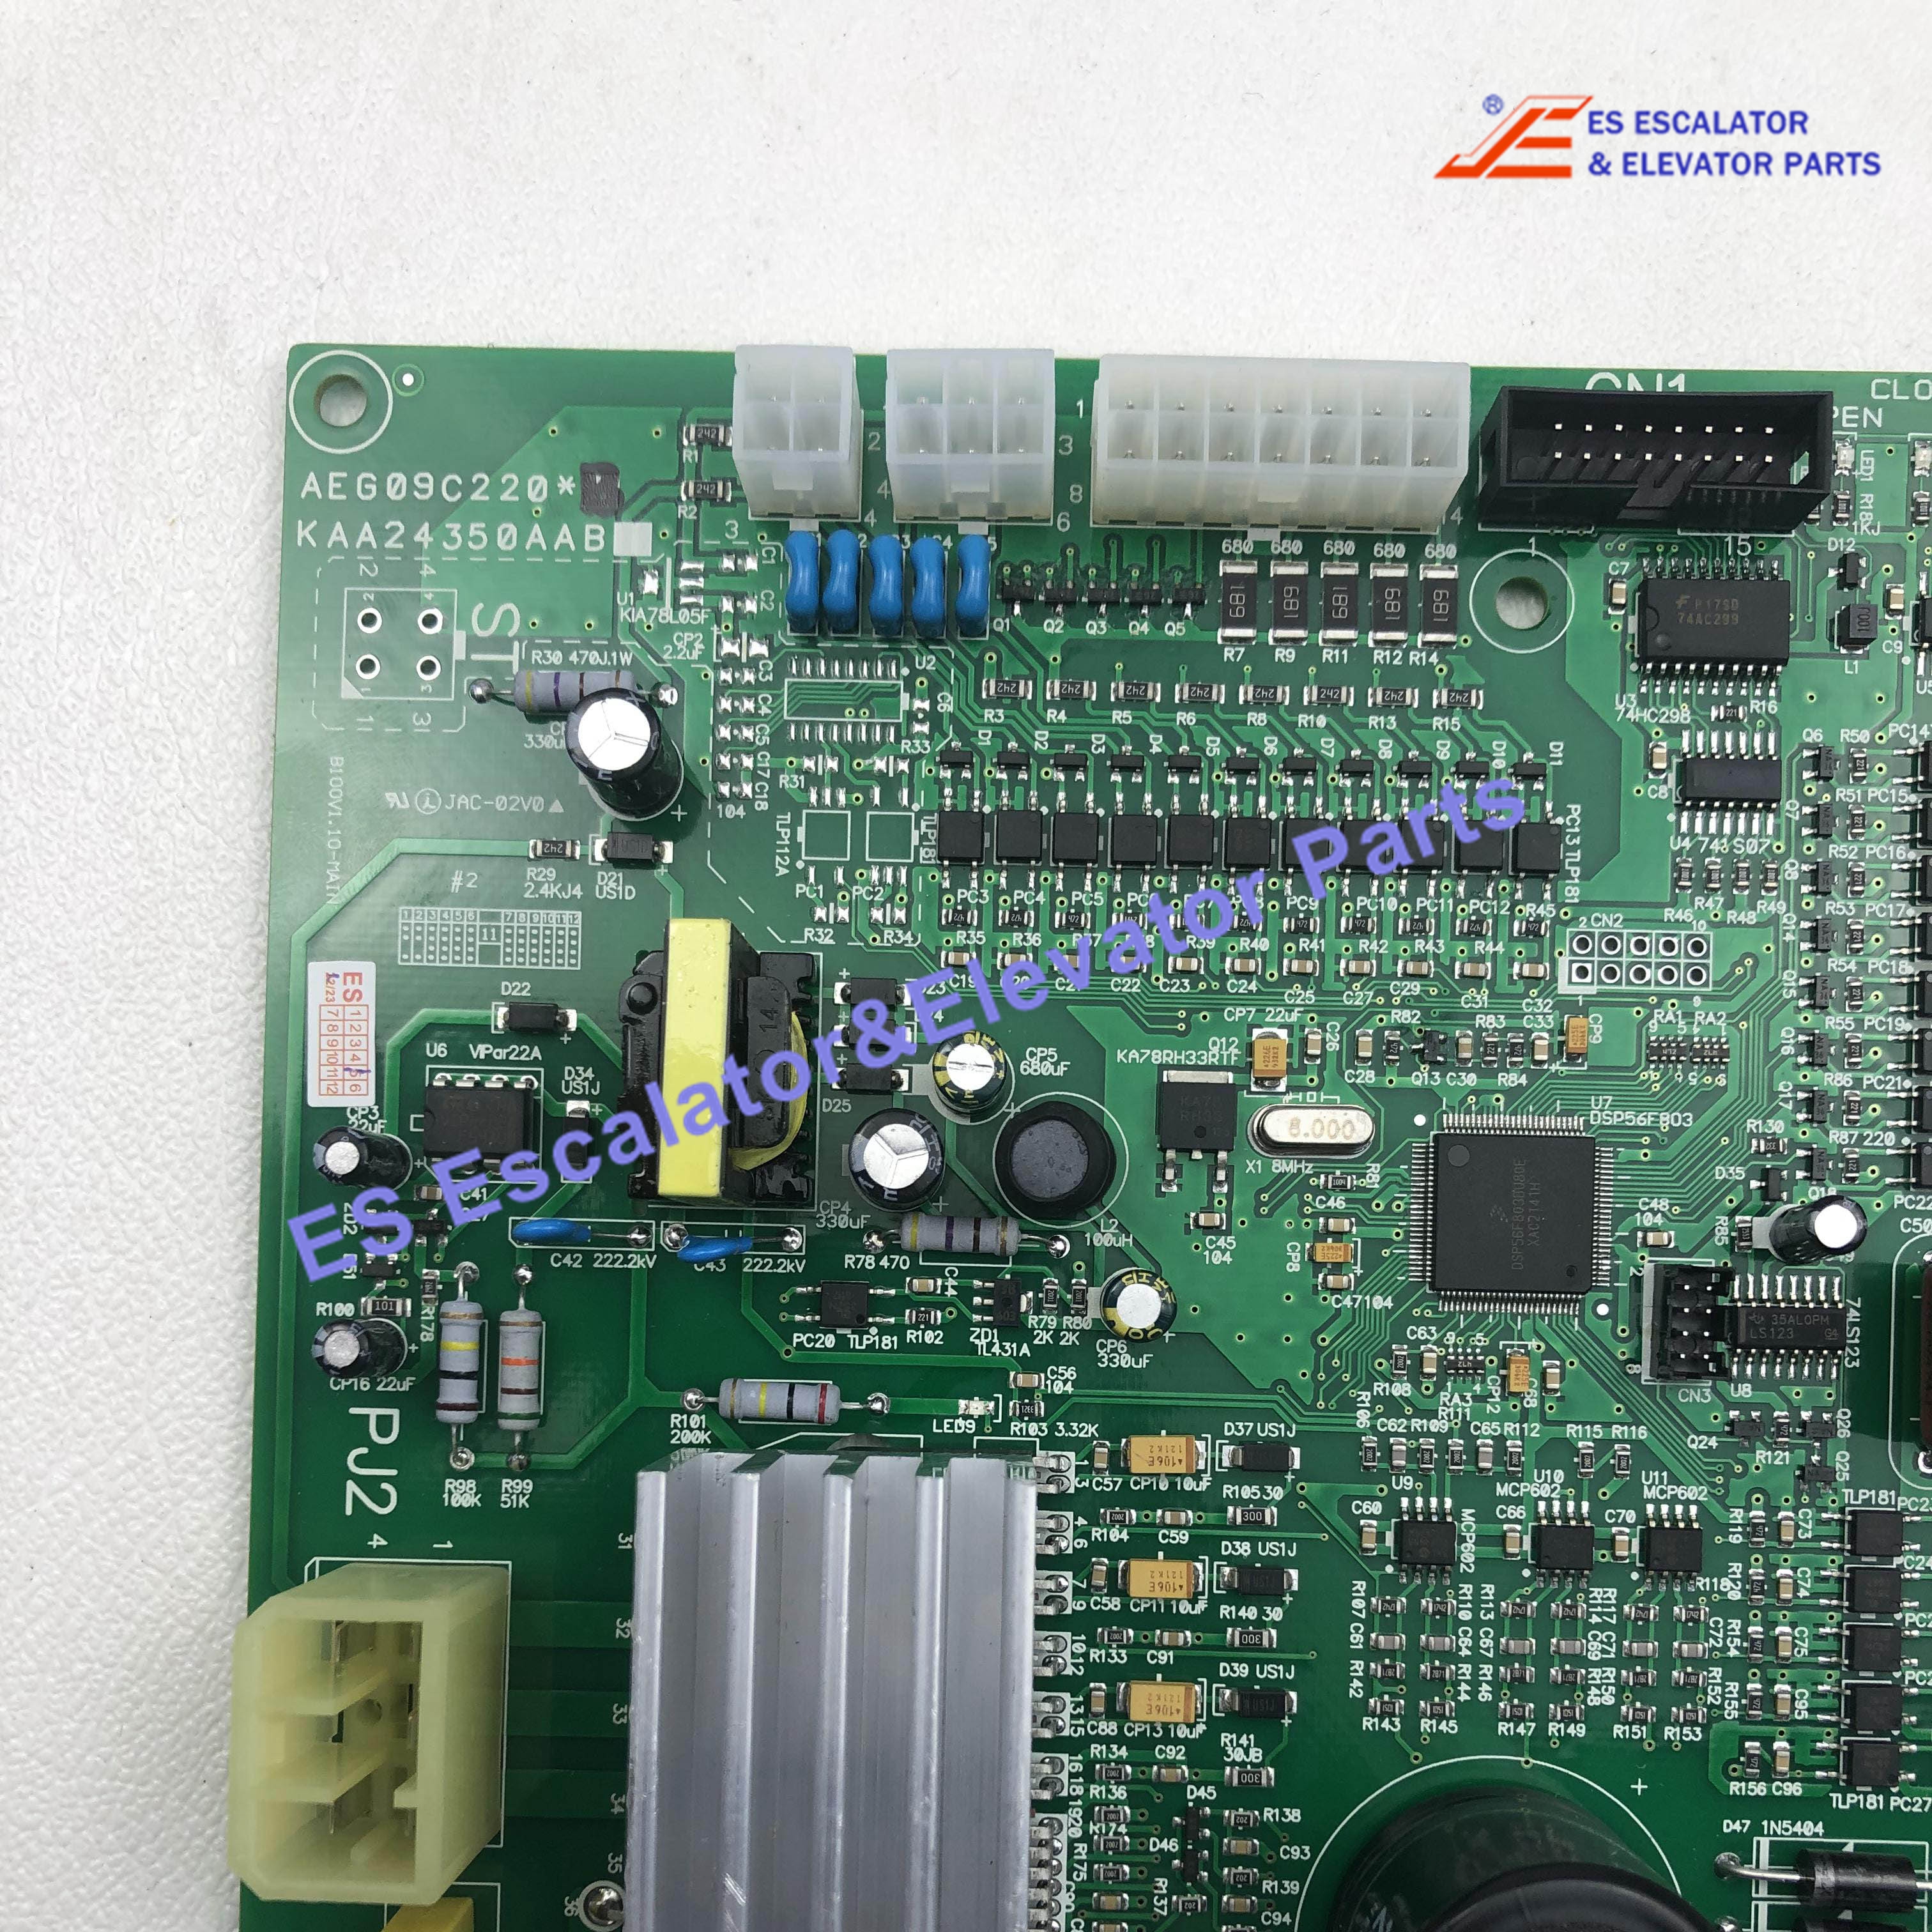 DCD-231 Elevator PCB Board AEG09C220*B Use For Lg/Sigma